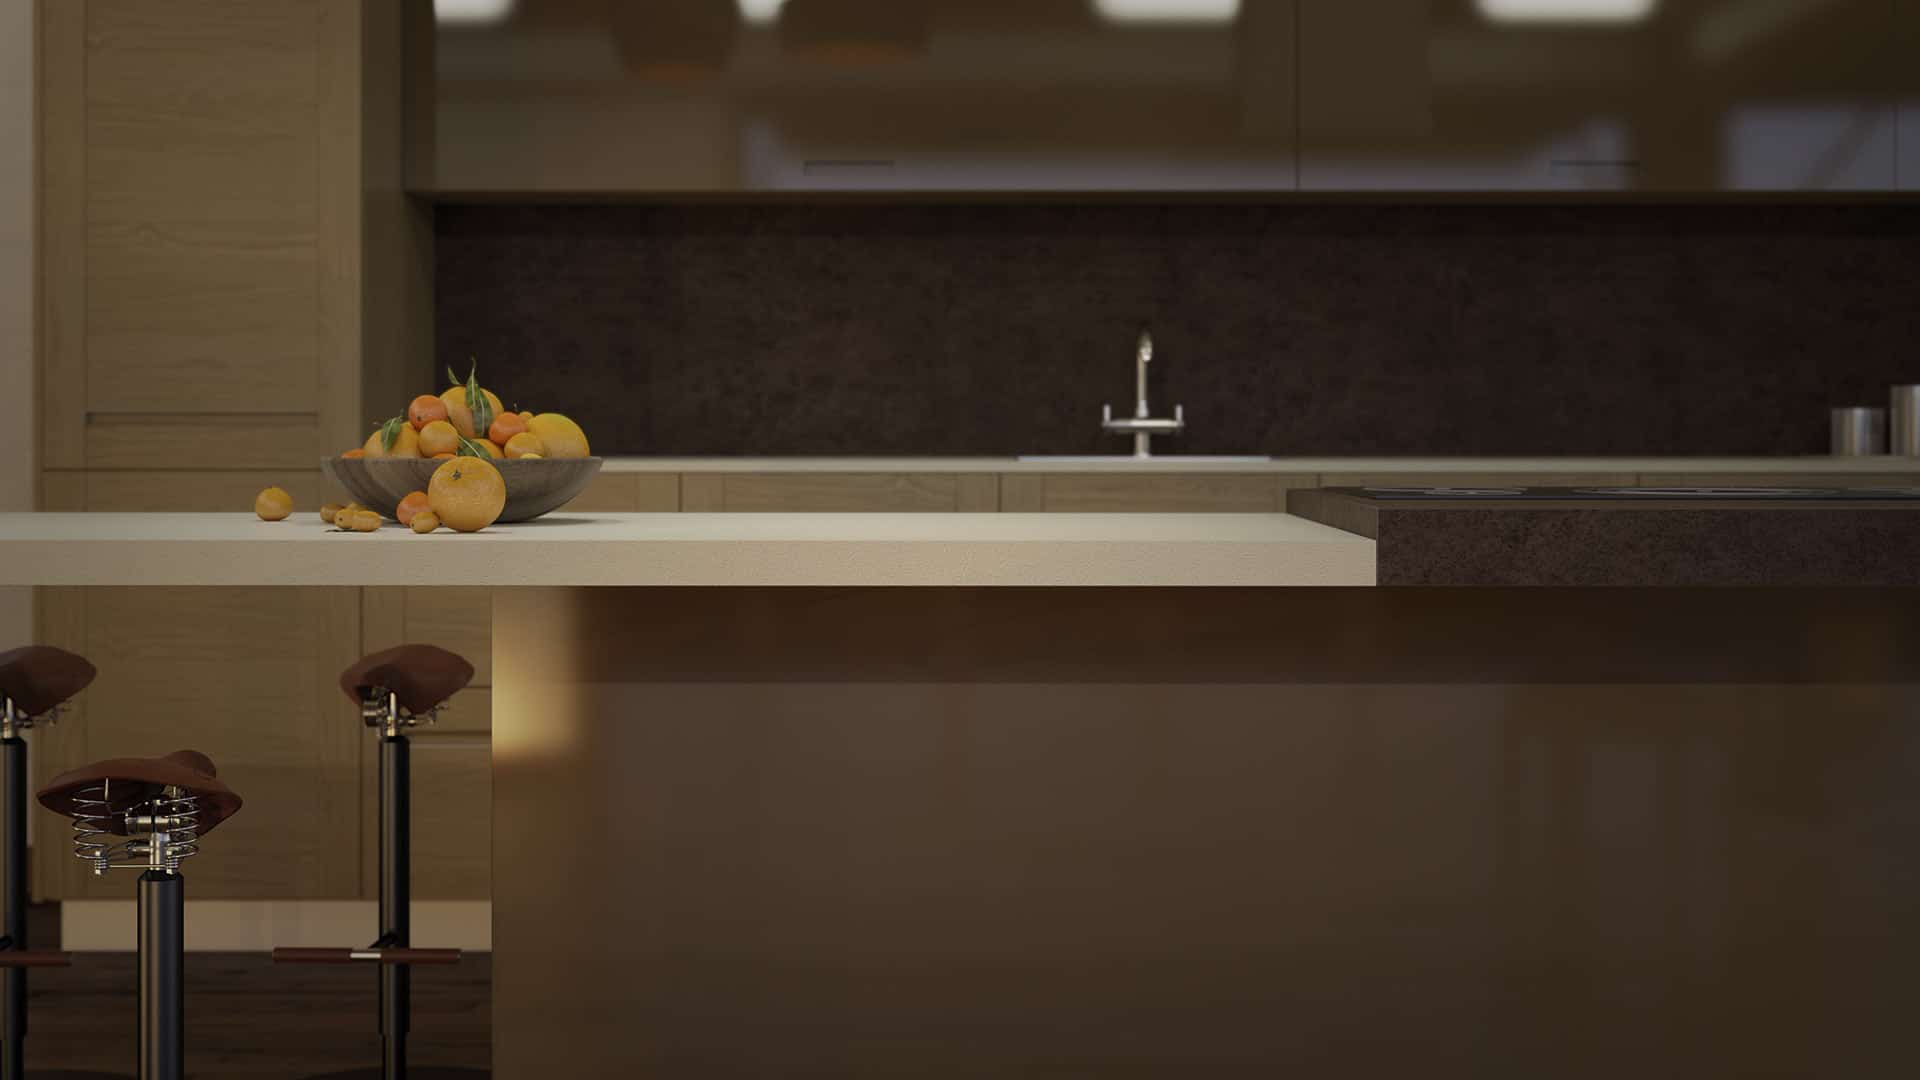 Muebles de diseño de cocina isla minimalista mitad en color blanco con un cuenco de frutas a modo de decoración y mitad con acabado en madera con vitrocerámica